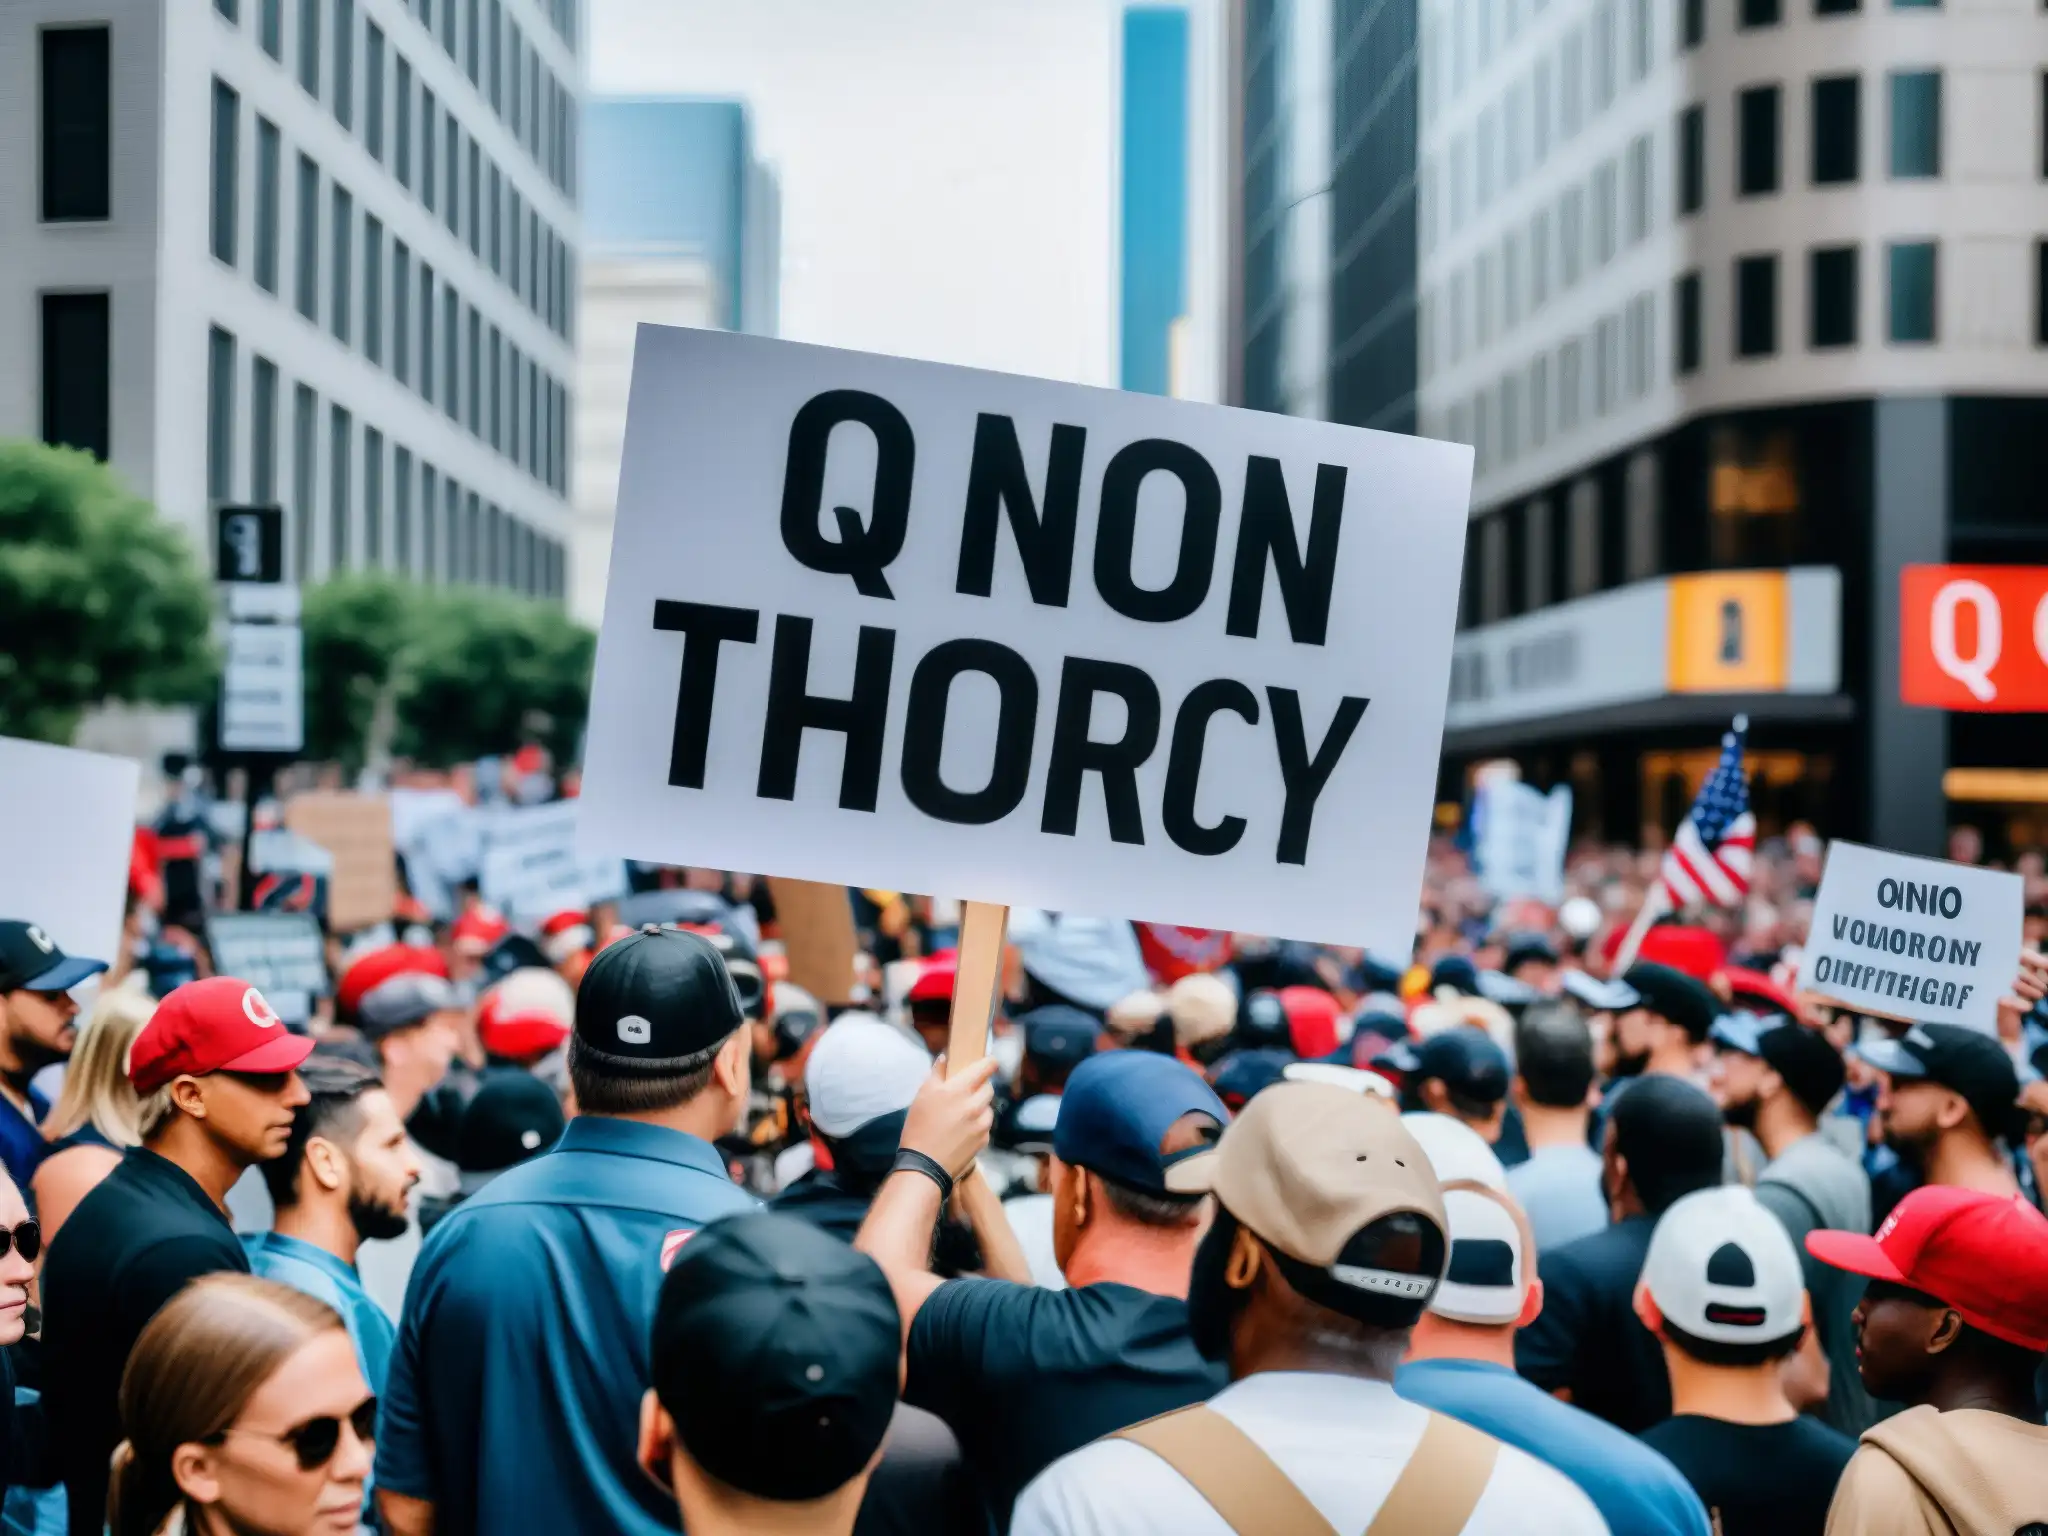 Imagen impactante de una protesta callejera con manifestantes sosteniendo pancartas y consignas relacionadas con el fenómeno QAnon